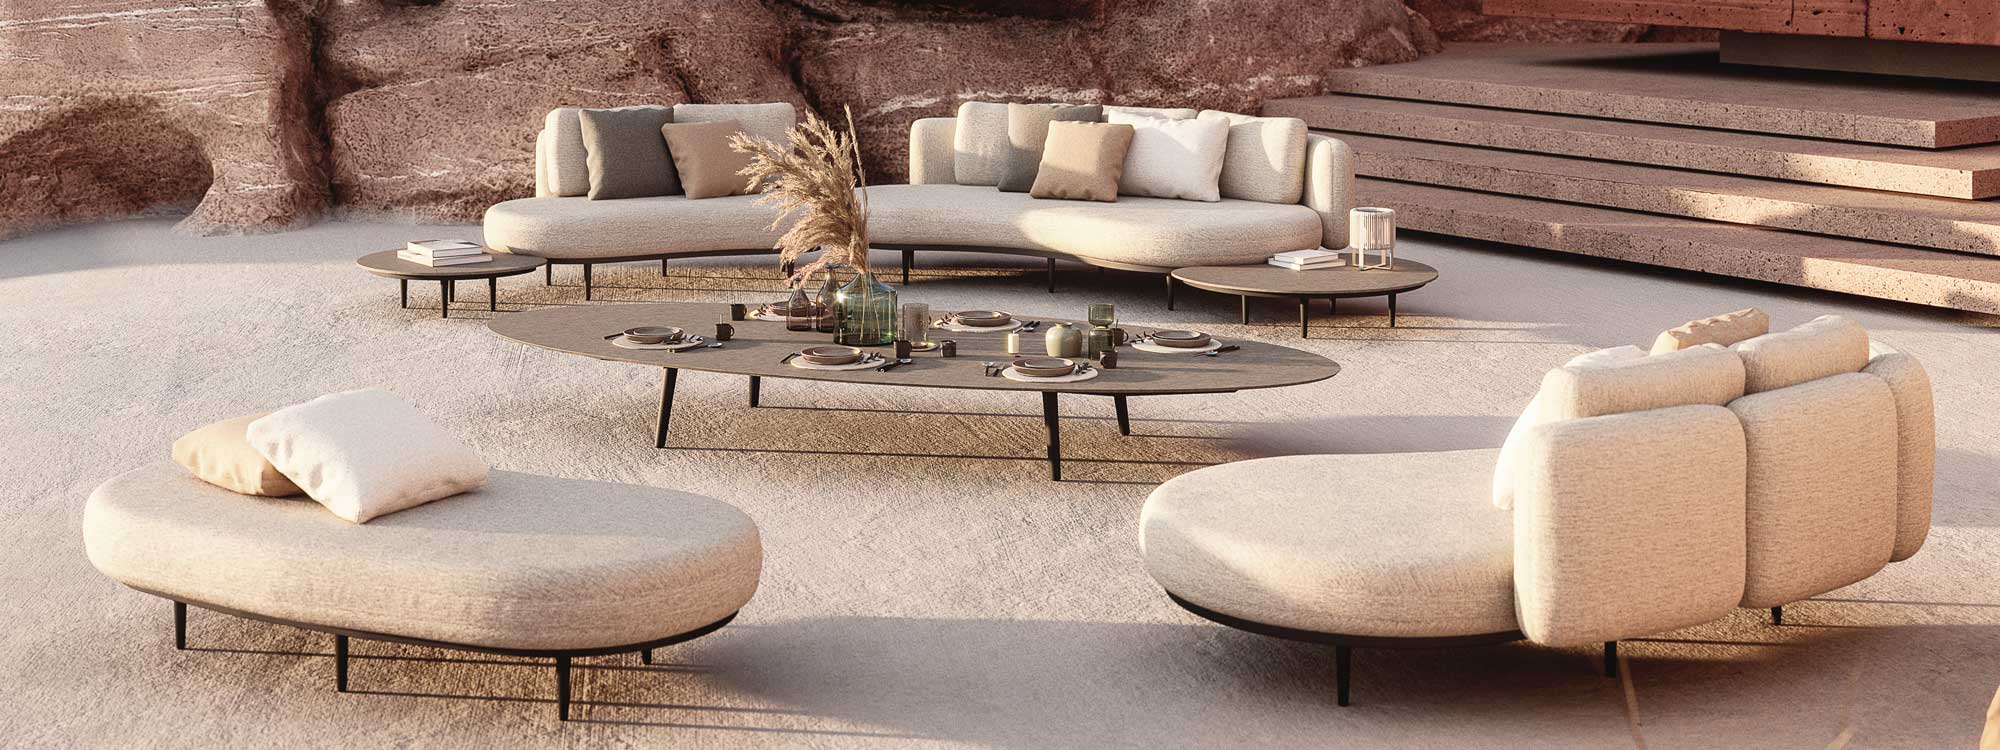 Organix garden sofa by Royal Botania garden furniture